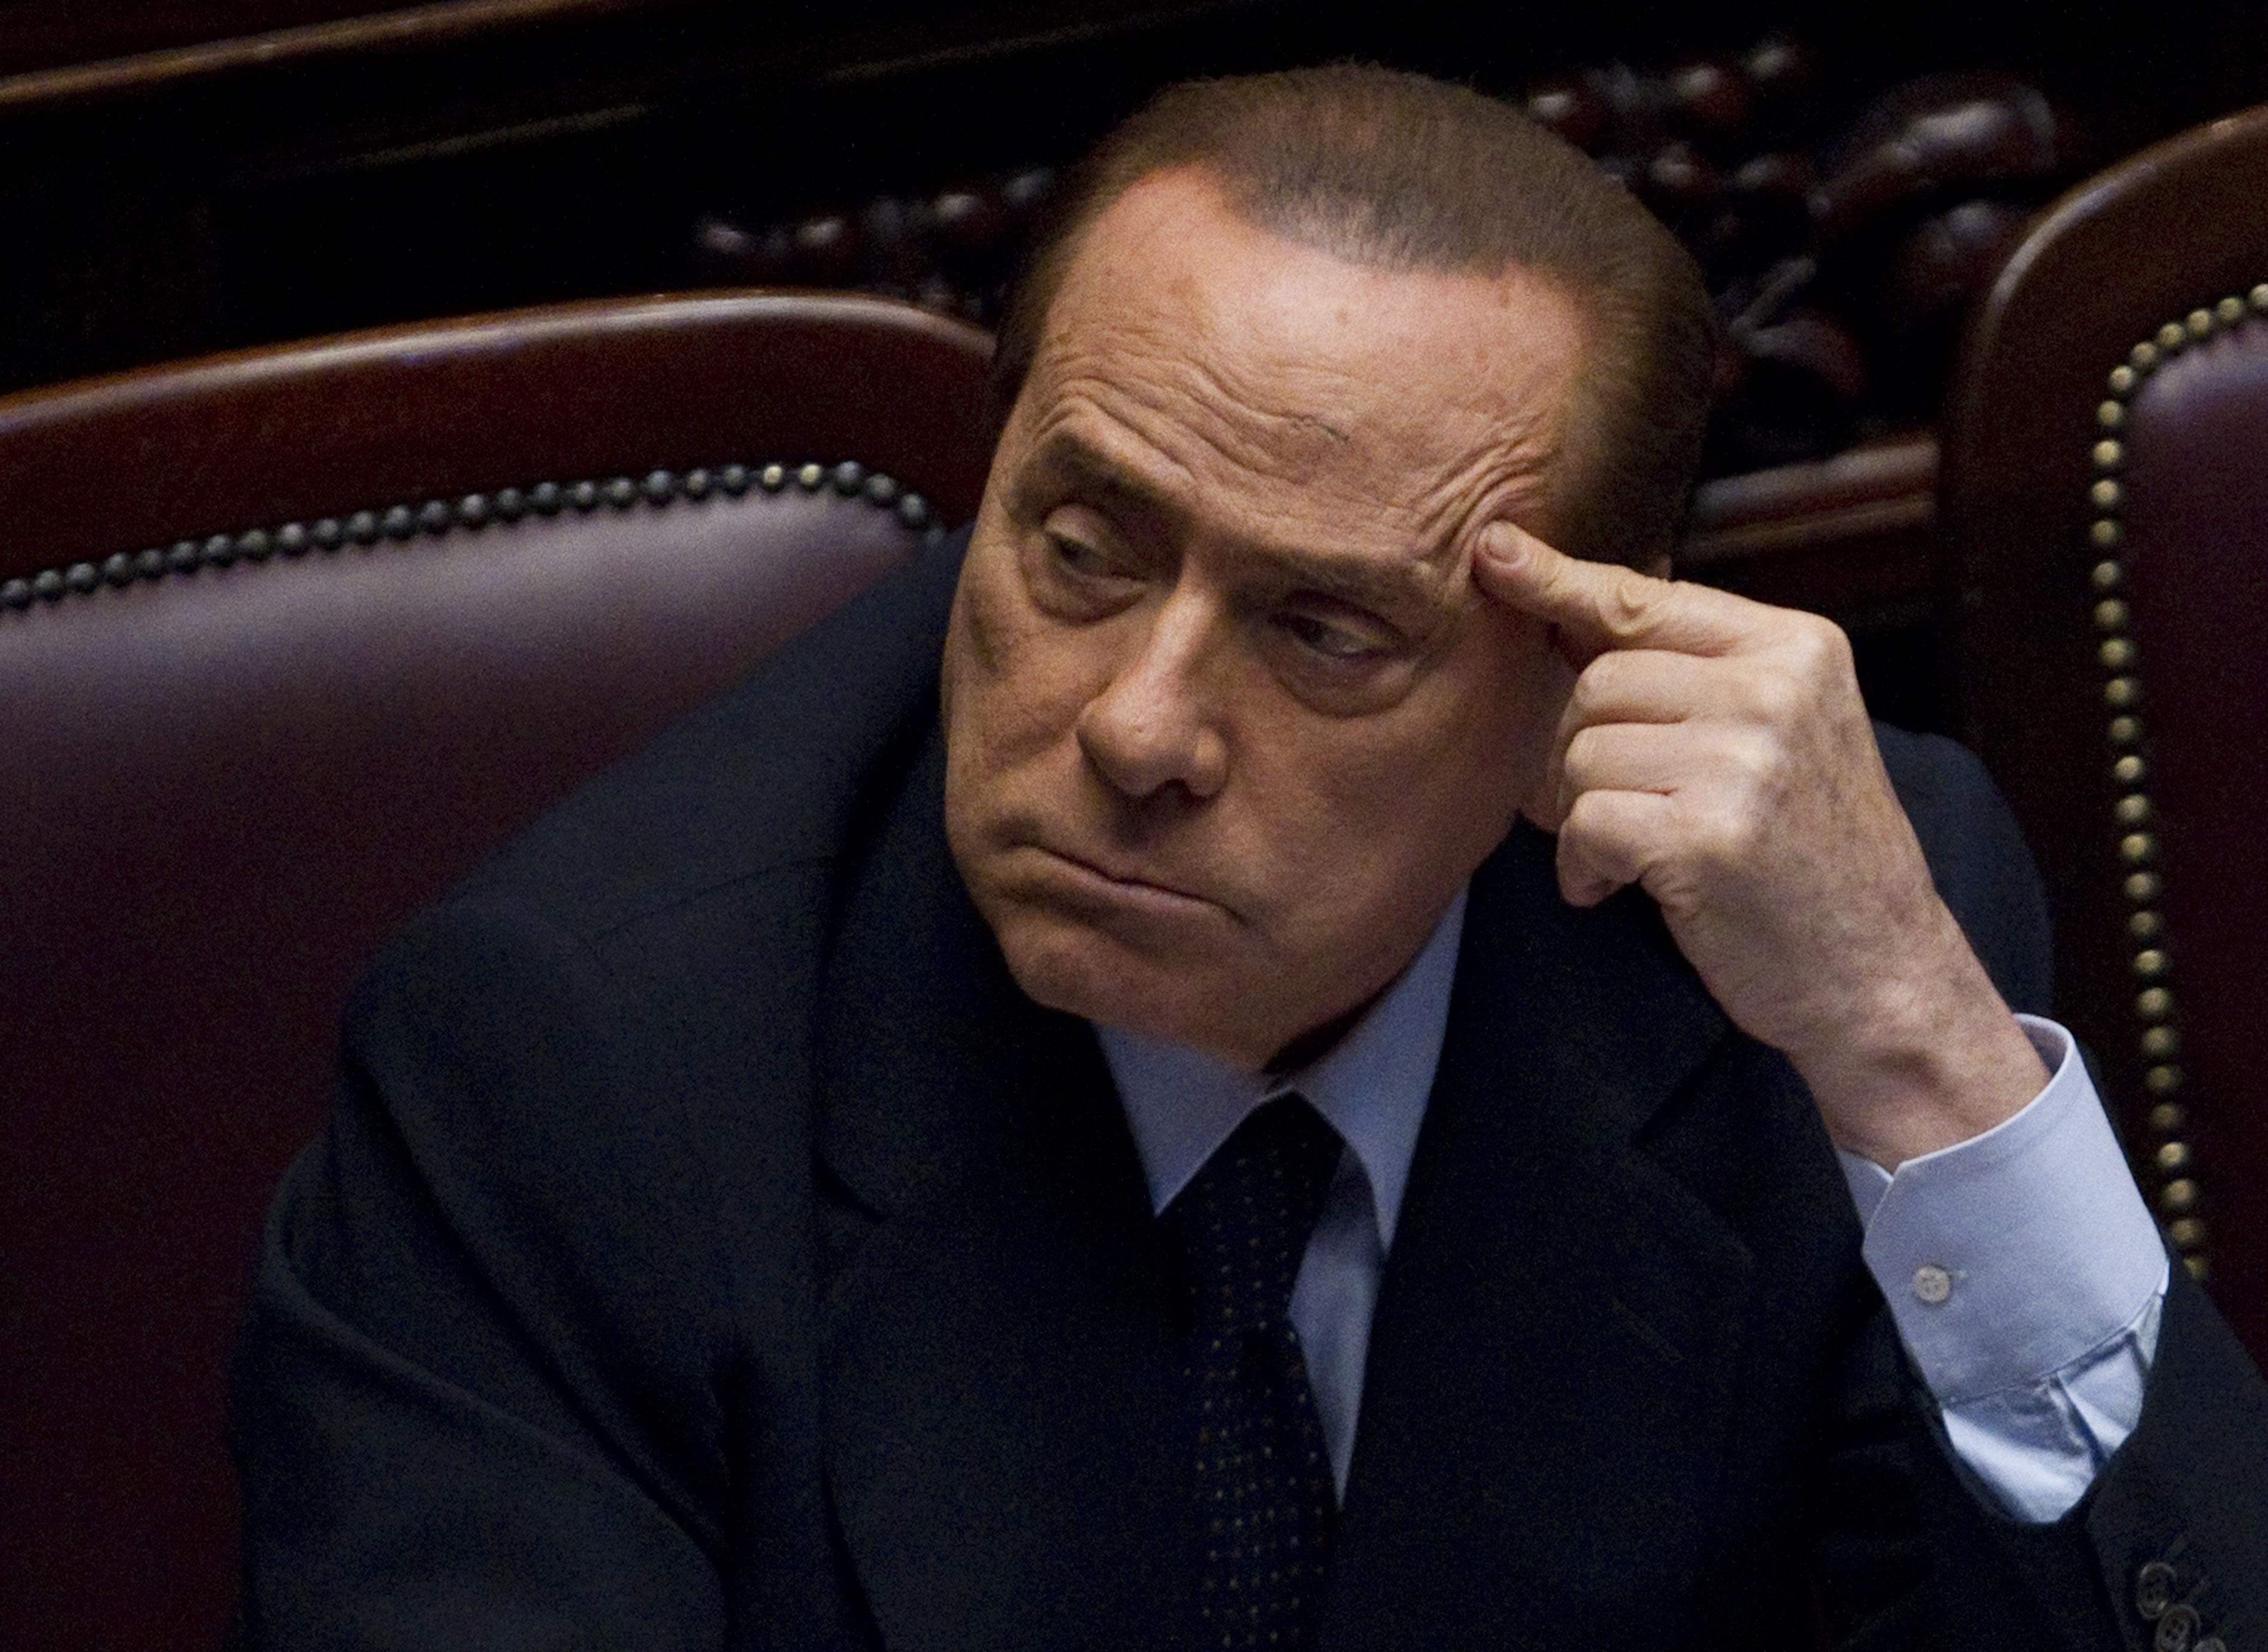 Köp av sexuell tjänst, Utpressning, Prostitution, Silvio Berlusconi, Sexualbrott, Italien, Brott och straff, Berlusconi, Politik, Sex- och samlevnad